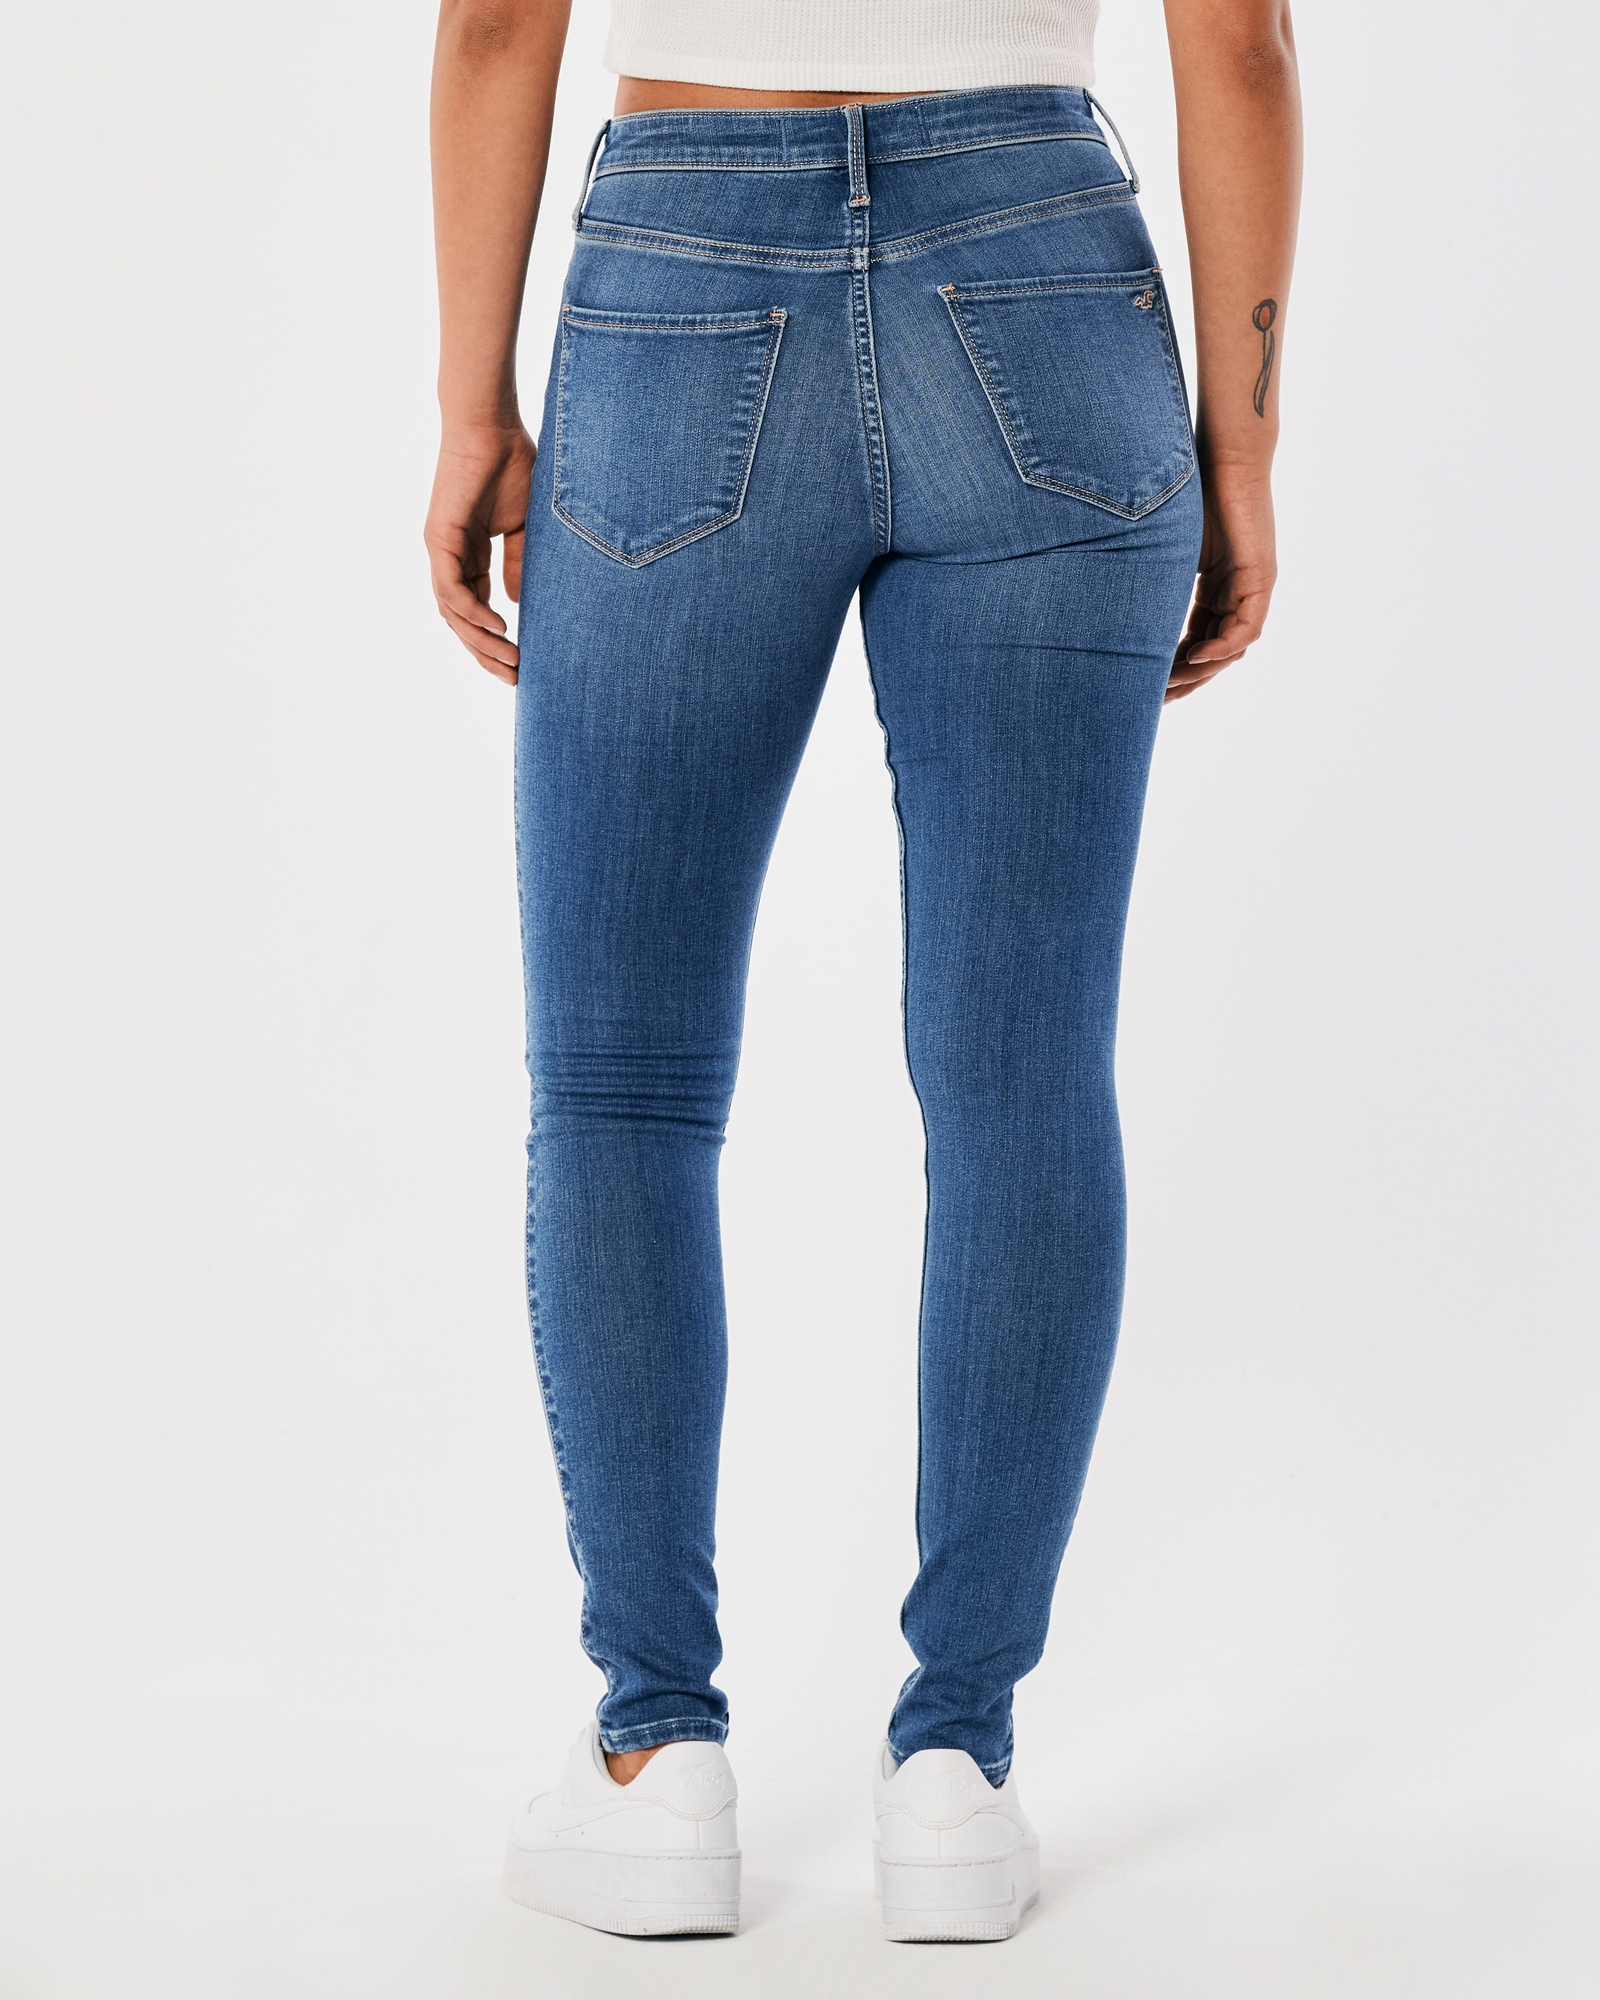 BN Hollister & Co HCO Dark Denim Jeggings Jeans Skinny Leggings Zip  Opening, Women's Fashion, Bottoms, Jeans & Leggings on Carousell